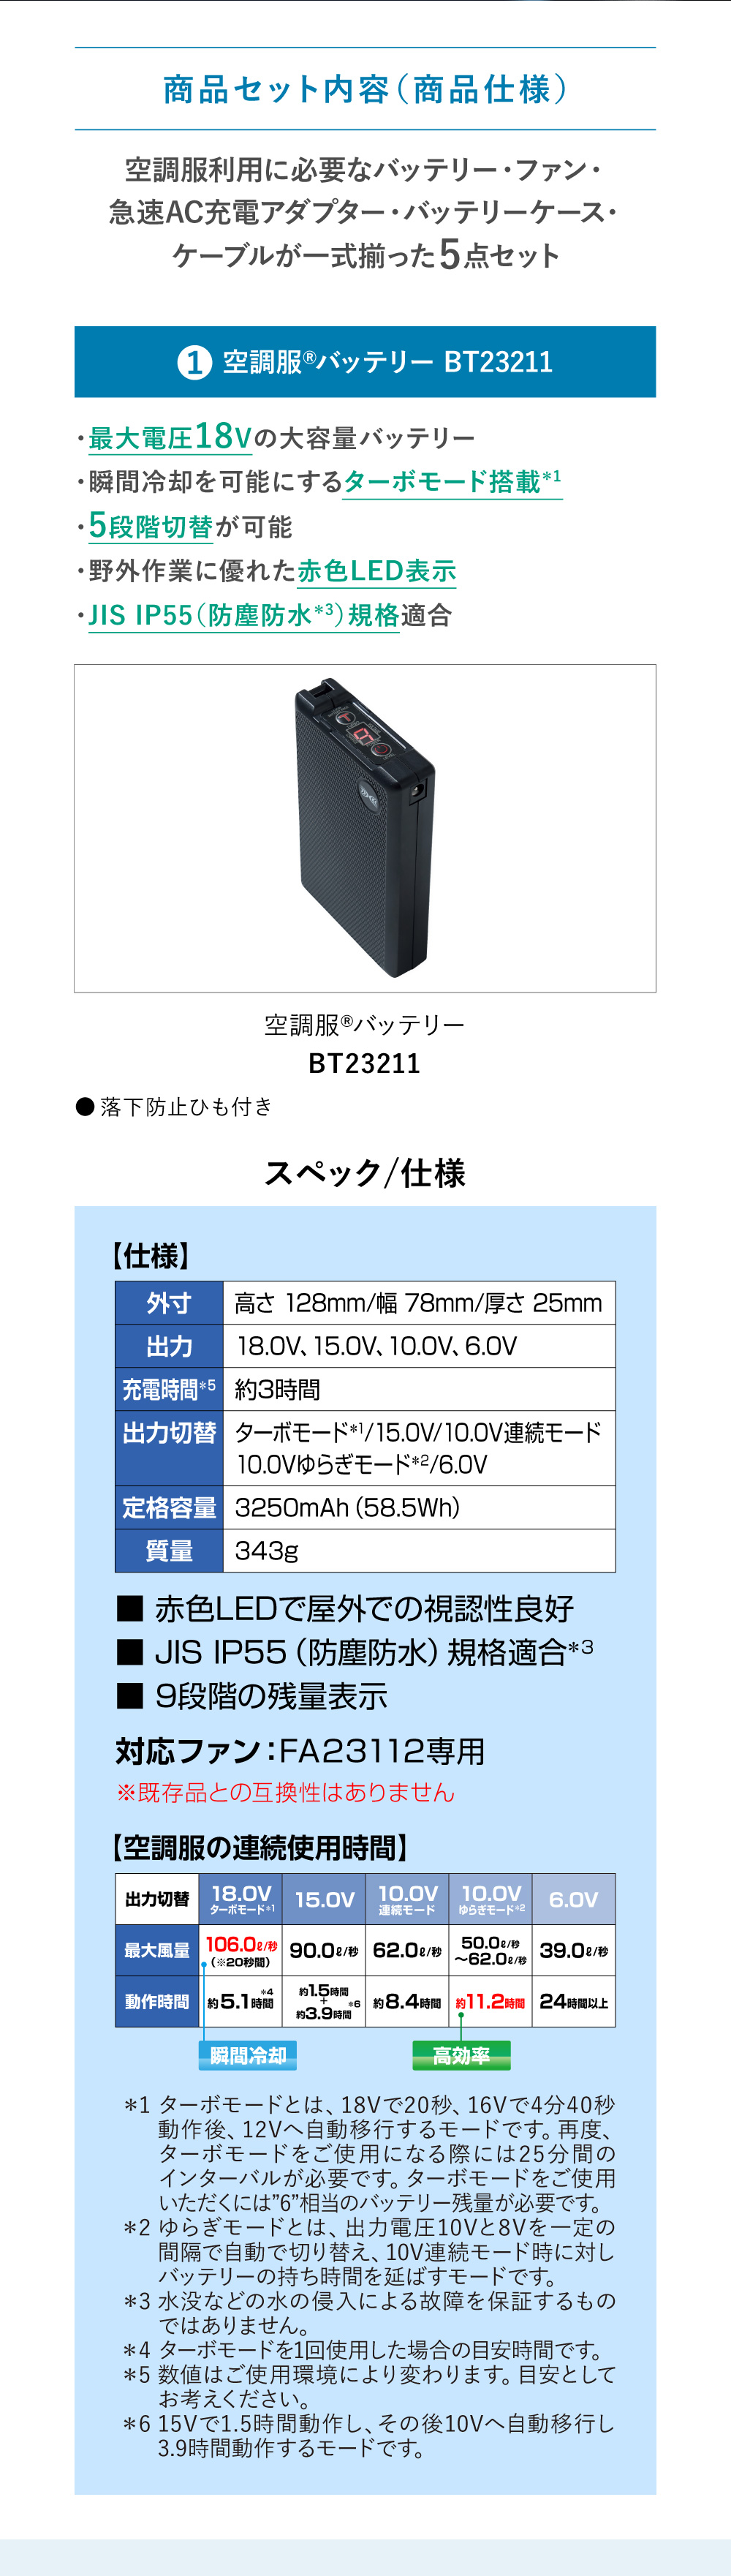 空調服(R) スターターキット ブラック SK23011K90 新デバイス 18V